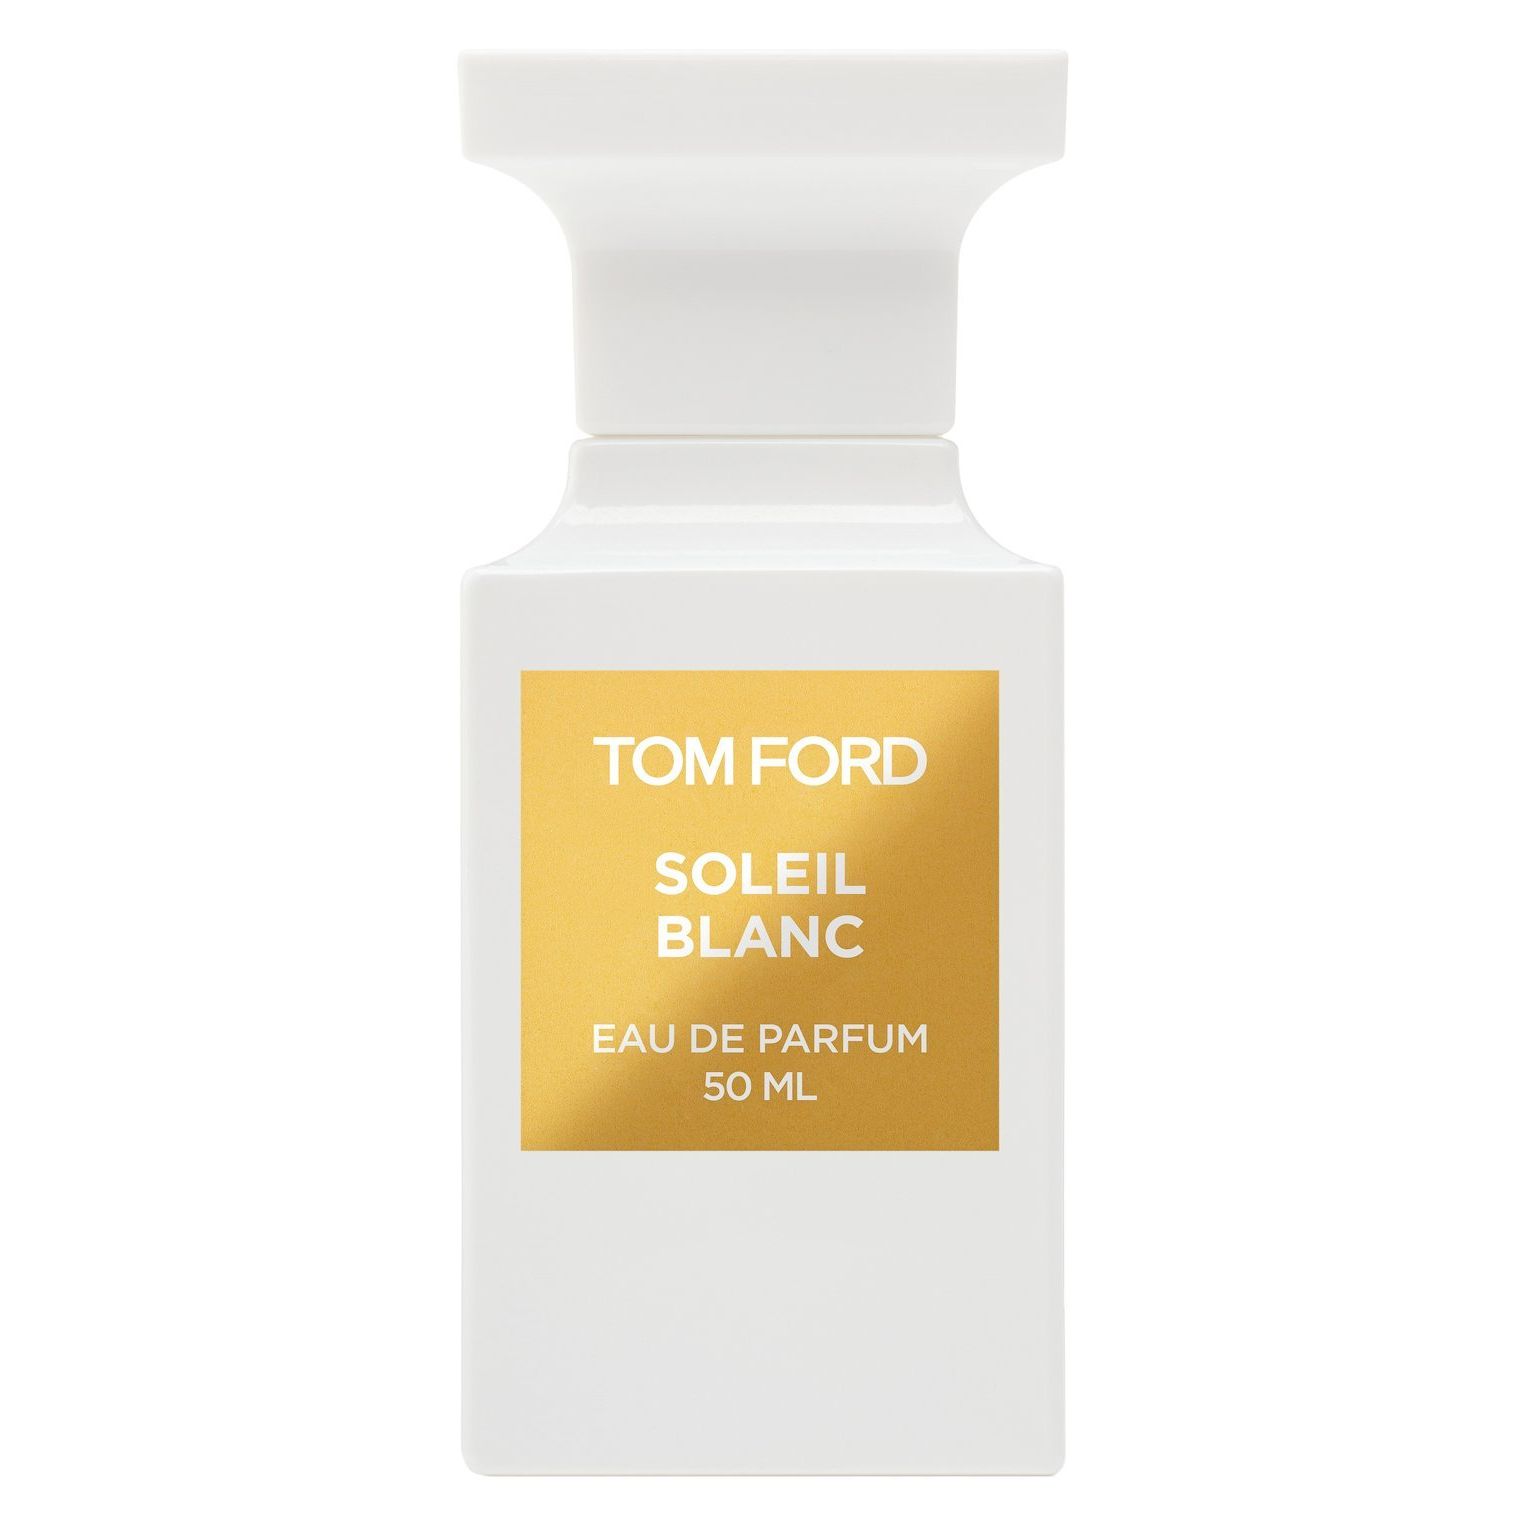 Вода парфюмерная Tom Ford Soleil Blanc, унисекс, 50 мл soleil neige